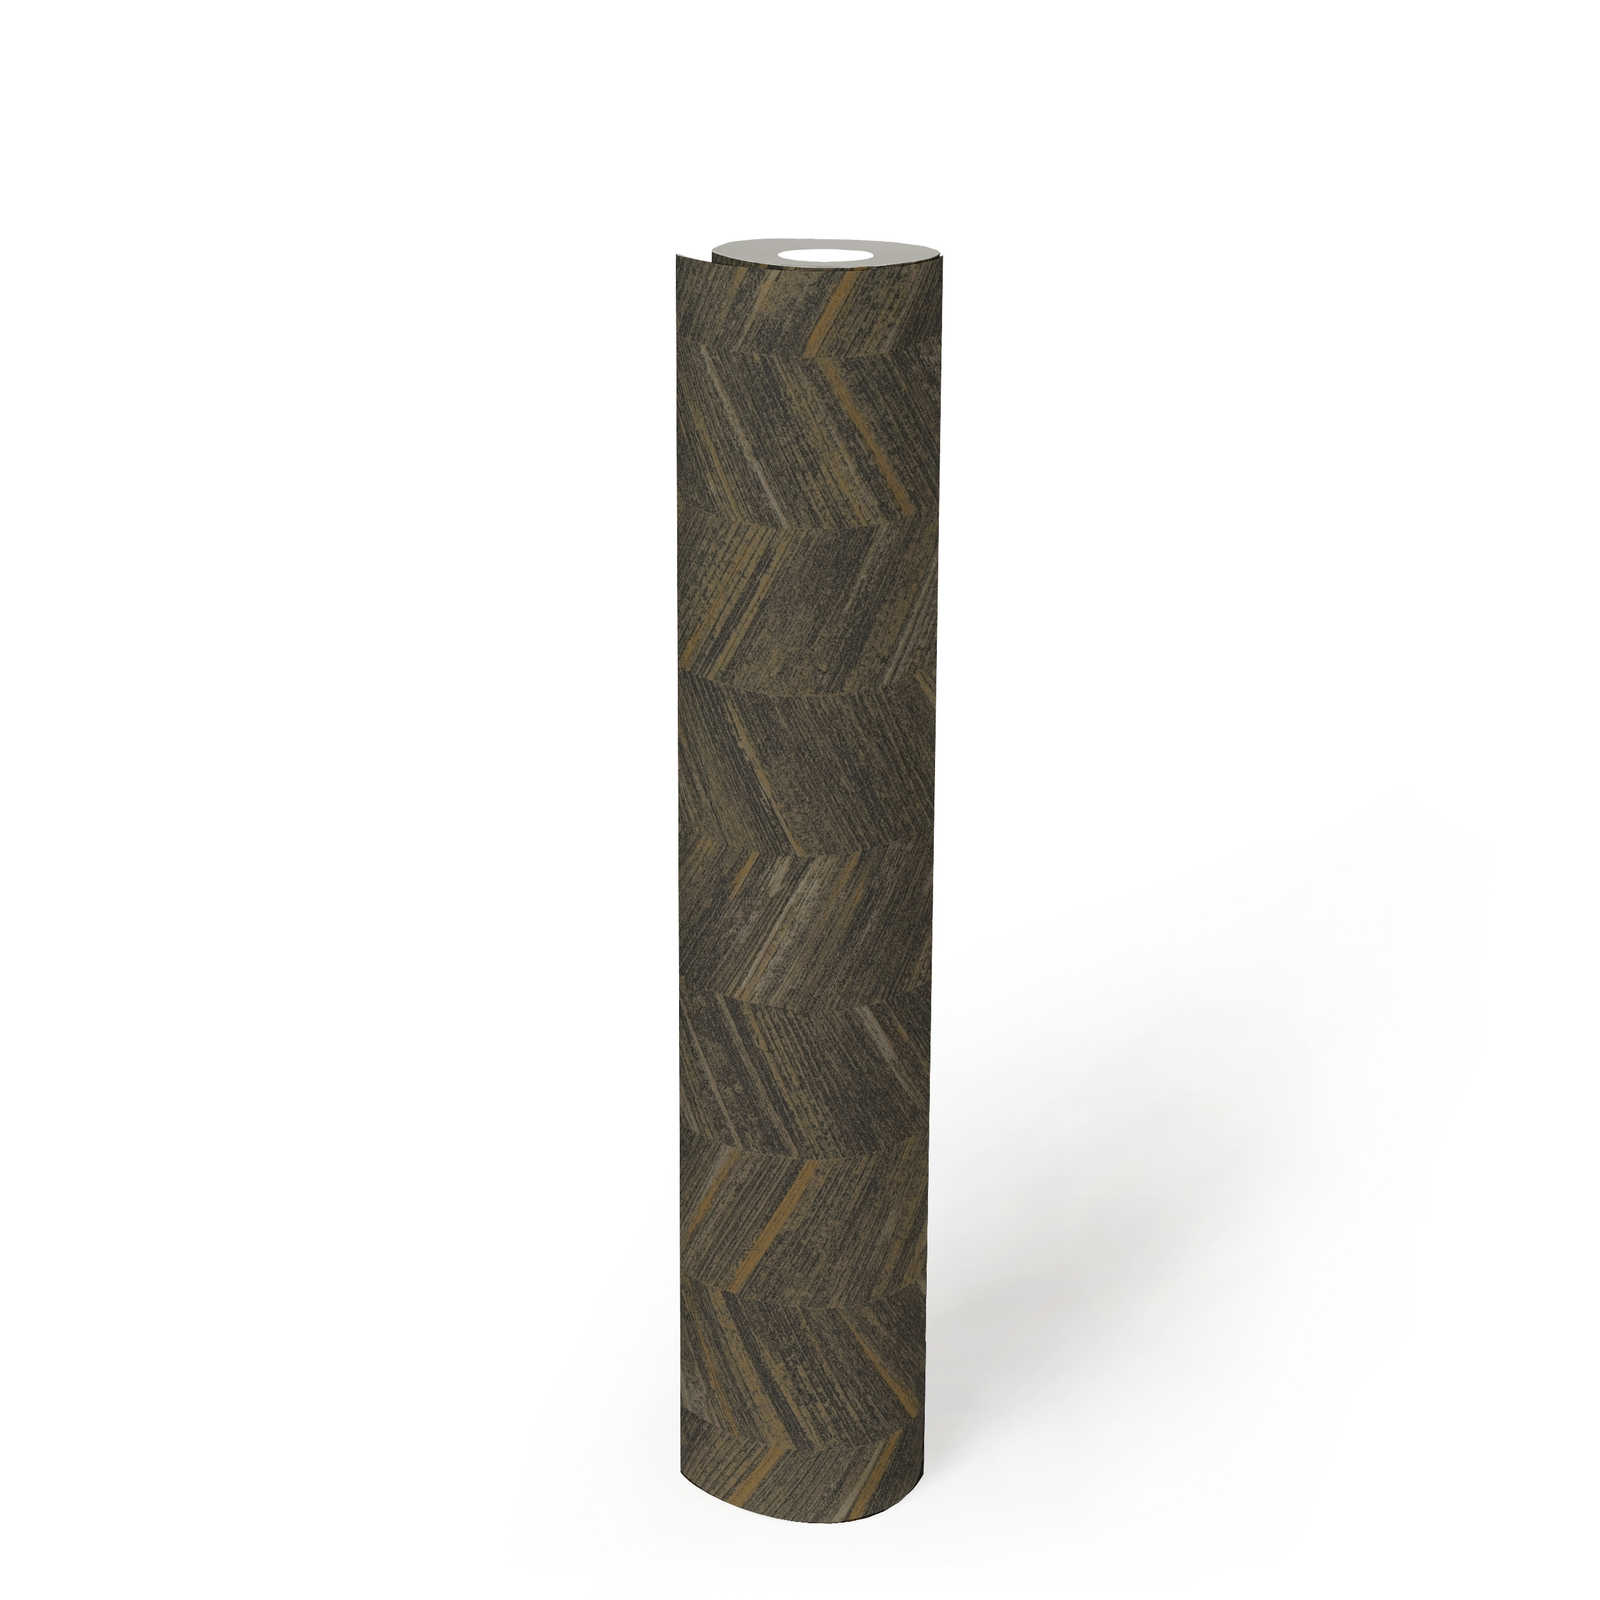             structuurbehang vlies met houteffect & visgraatmotief - bruin, metallic
        